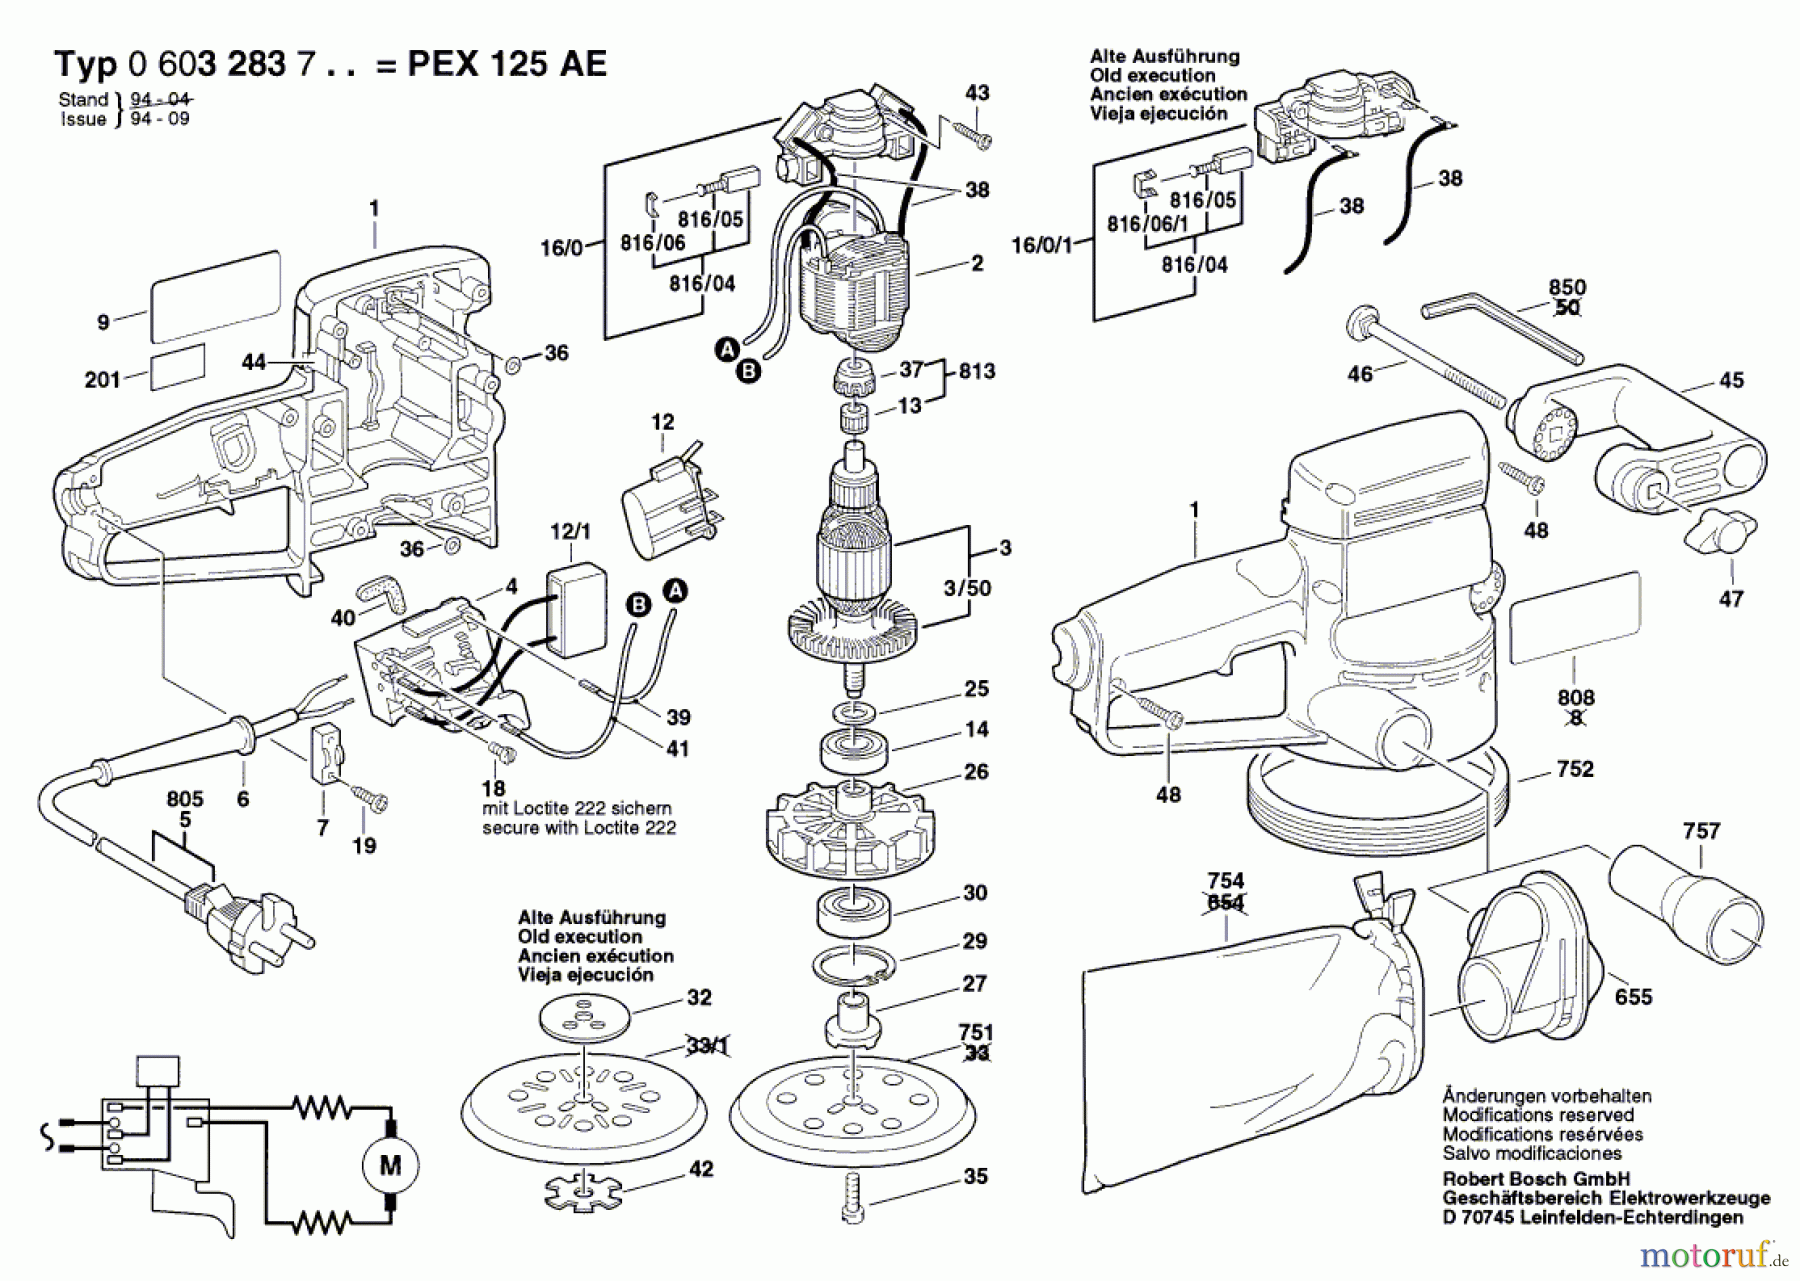  Bosch Werkzeug Exzenterschleifer PEX 125 AE Seite 1